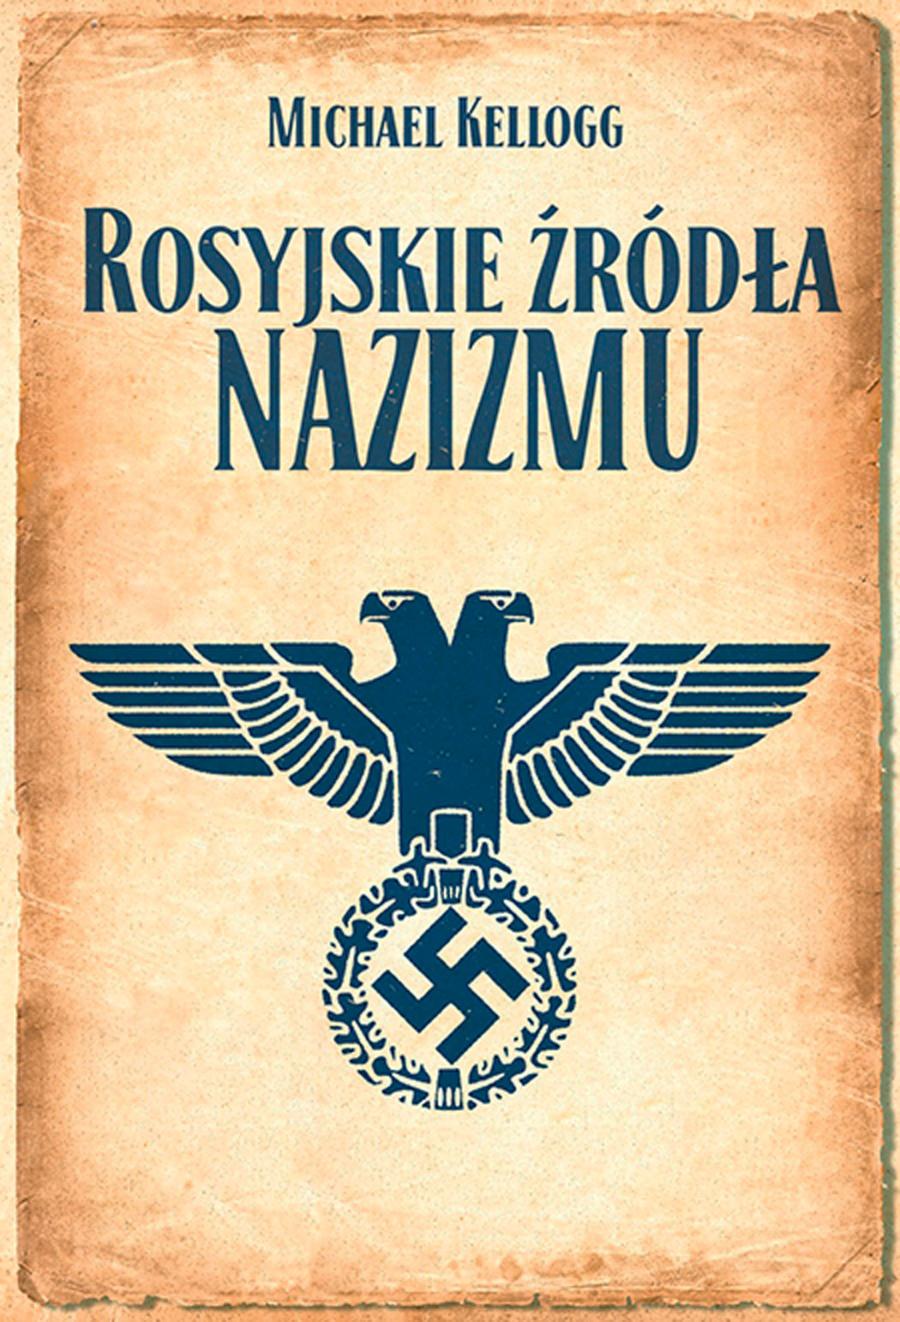 Michael Kellogg, Rosyjskie źródła nazizmu, przeł. Sławomir Kędzierski, Wydawnictwo Poznańskie, Poznań 2015.